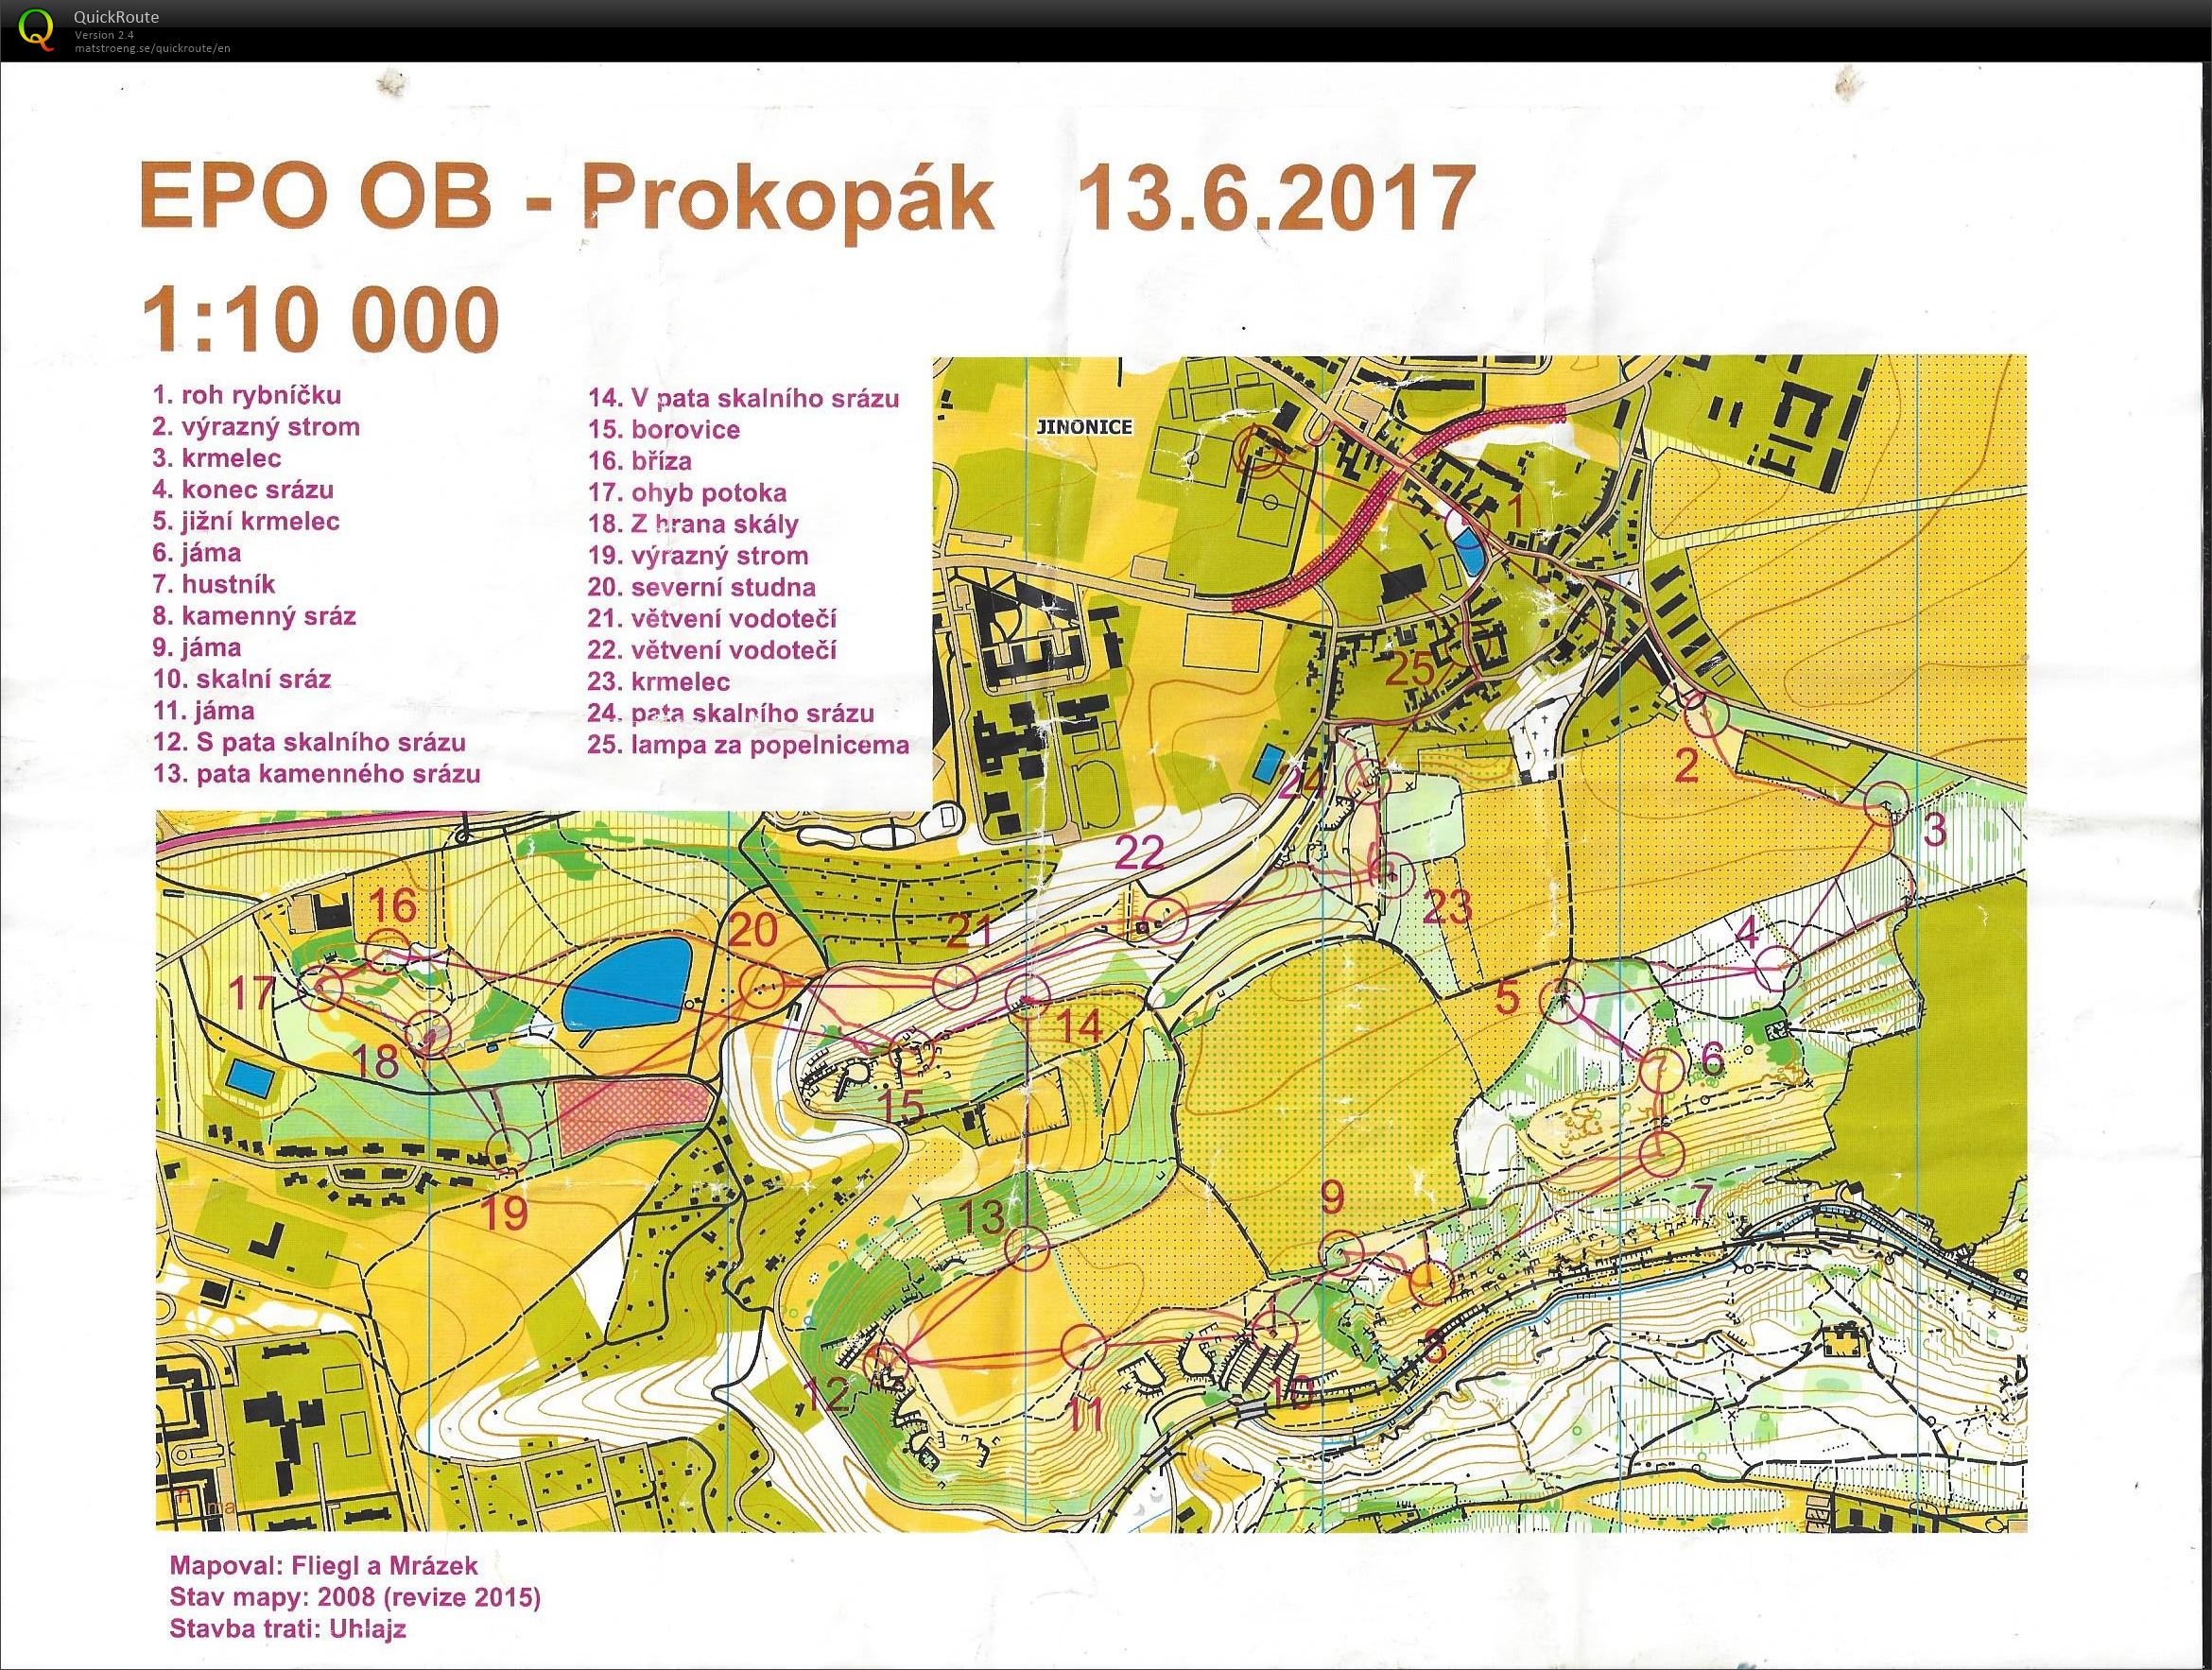 EPO OB - Prokopák (13/06/2017)